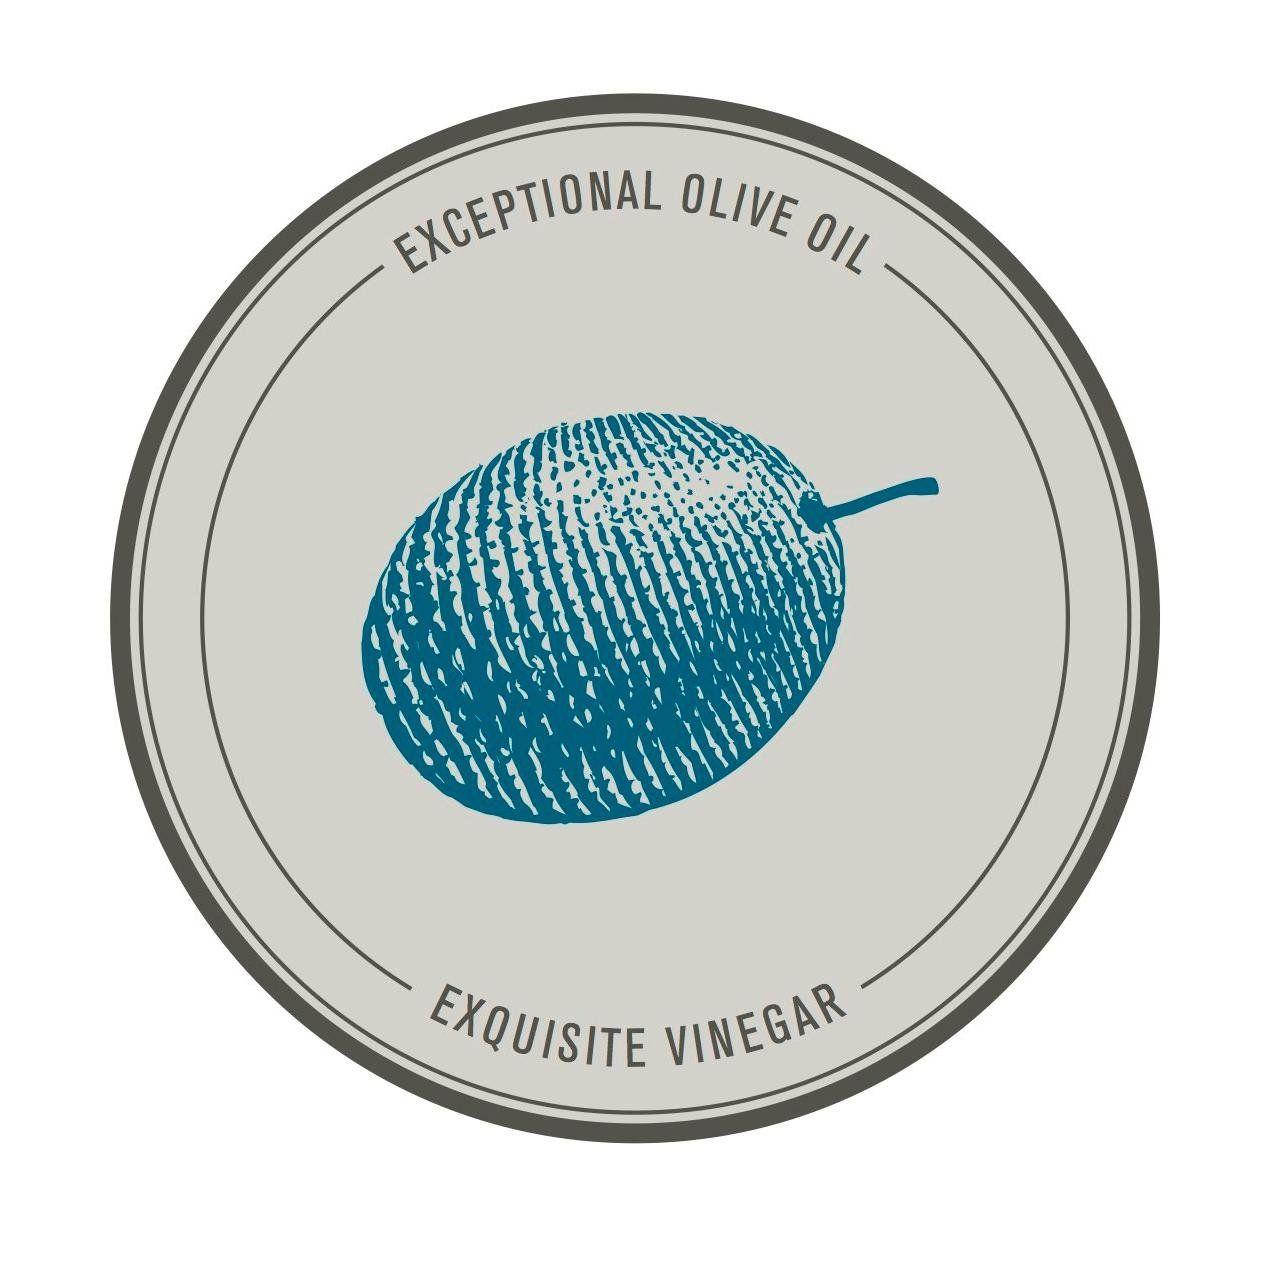 Blue Olive Logo - The Blue Olive